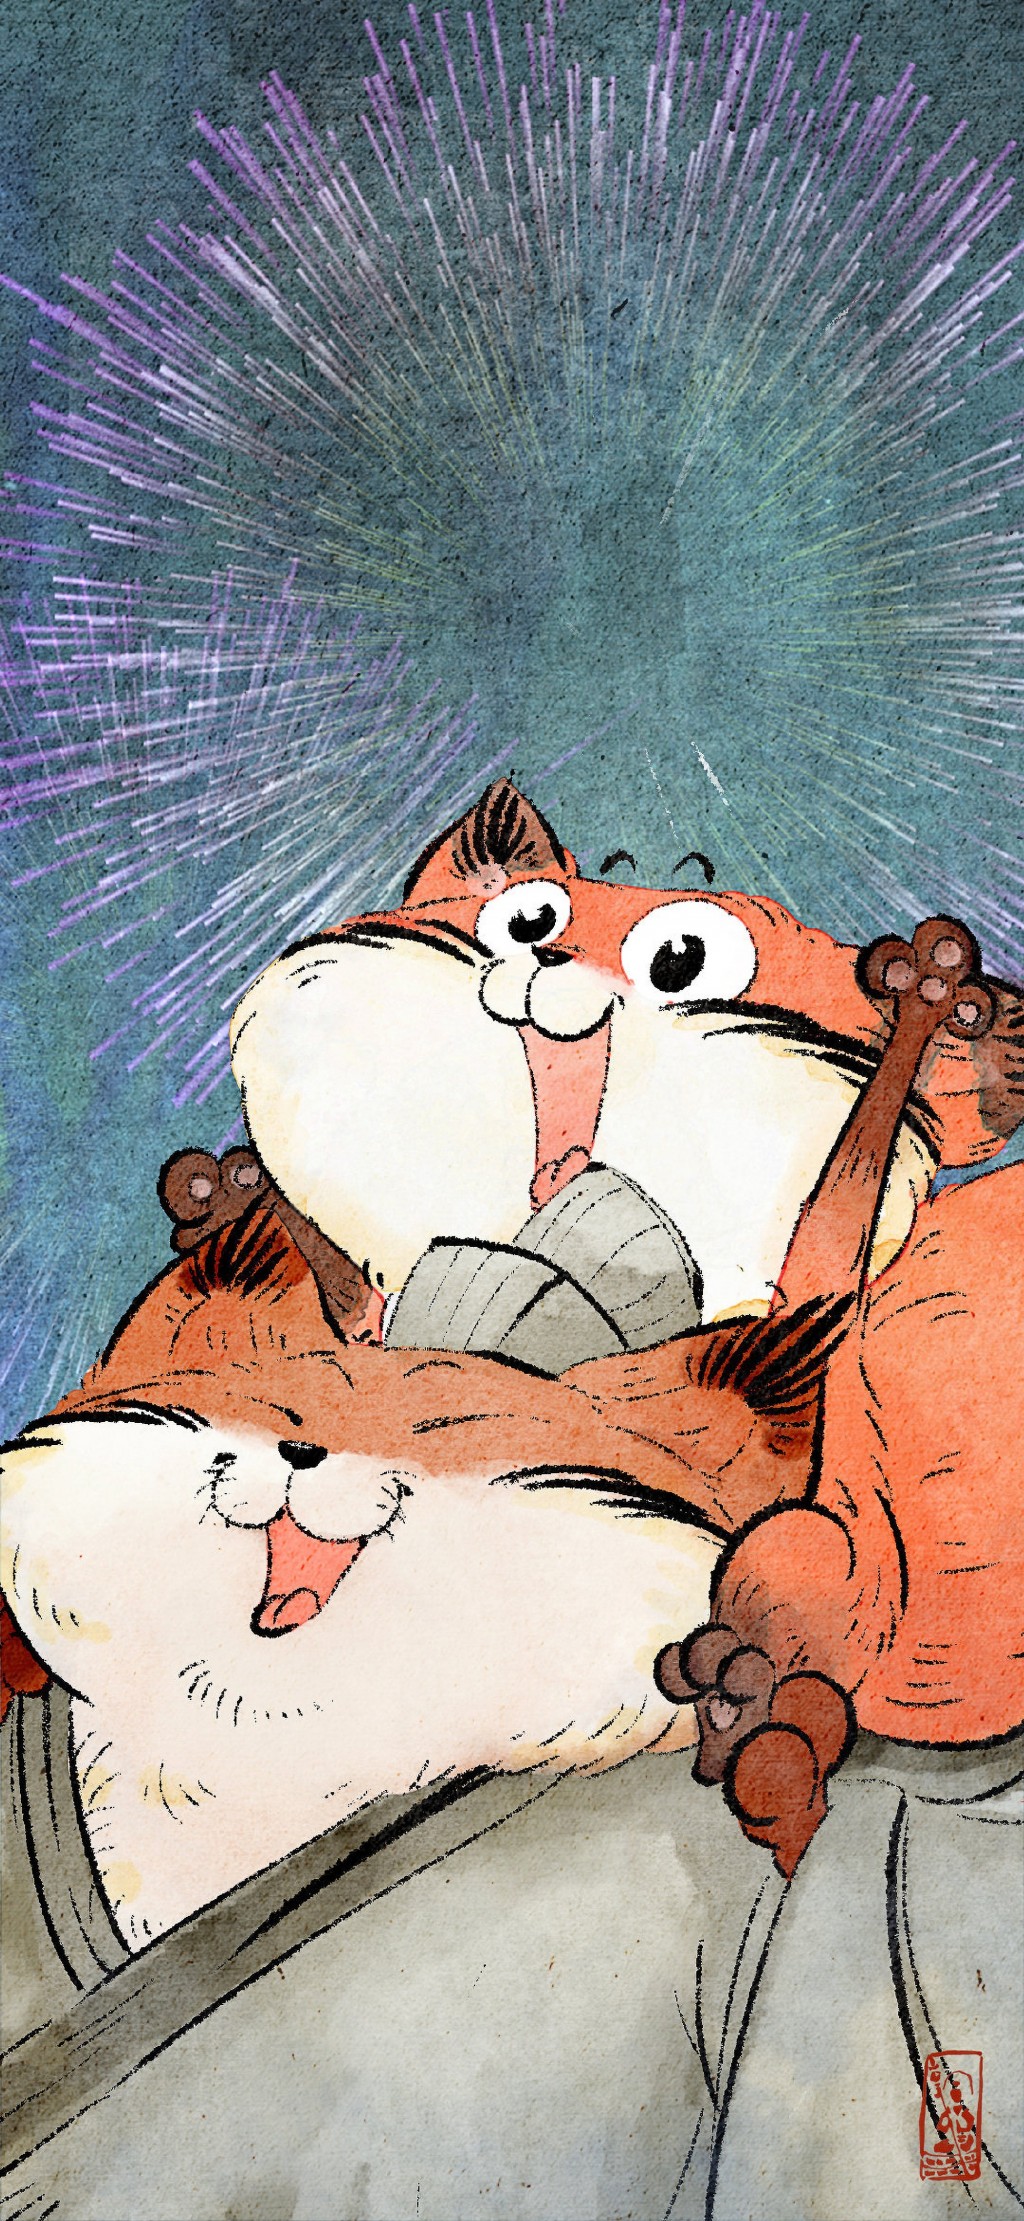 可爱的狐狸卡通插画手机壁纸